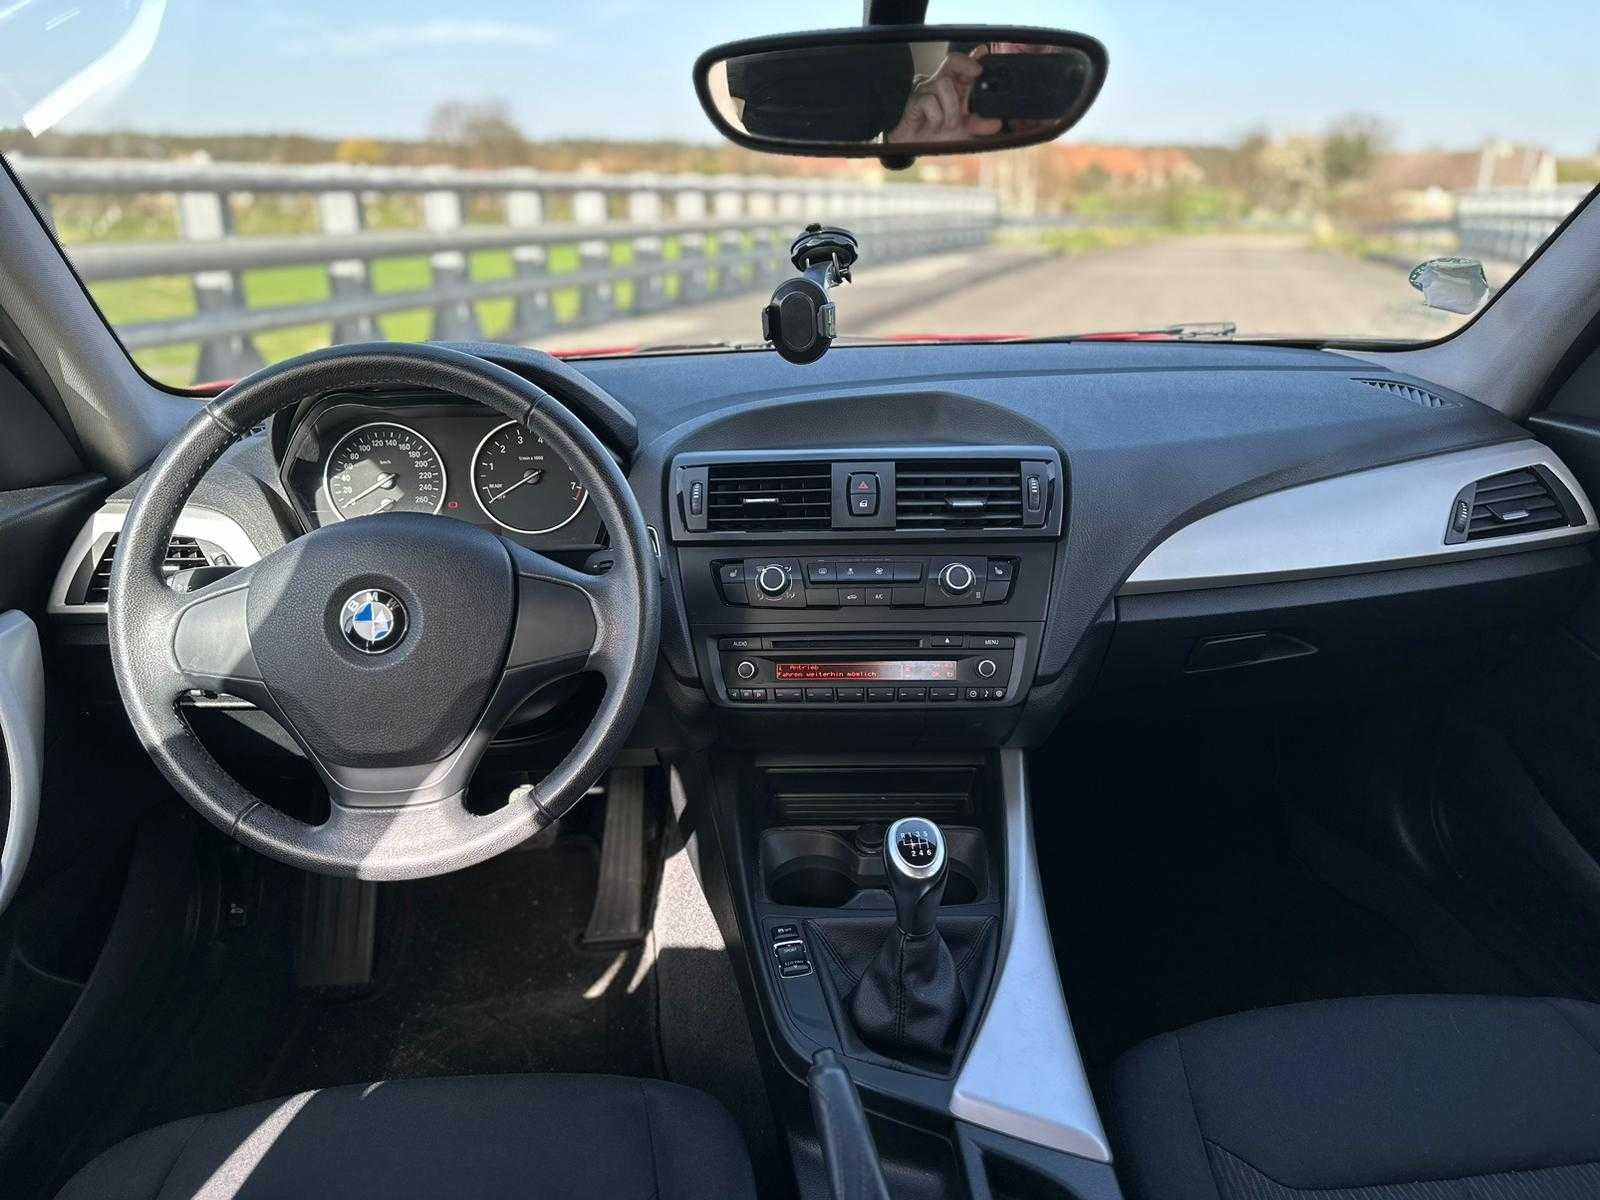 BMW Serii 1, 2012  - sprowadzony i opłacony. Niski przebieg.